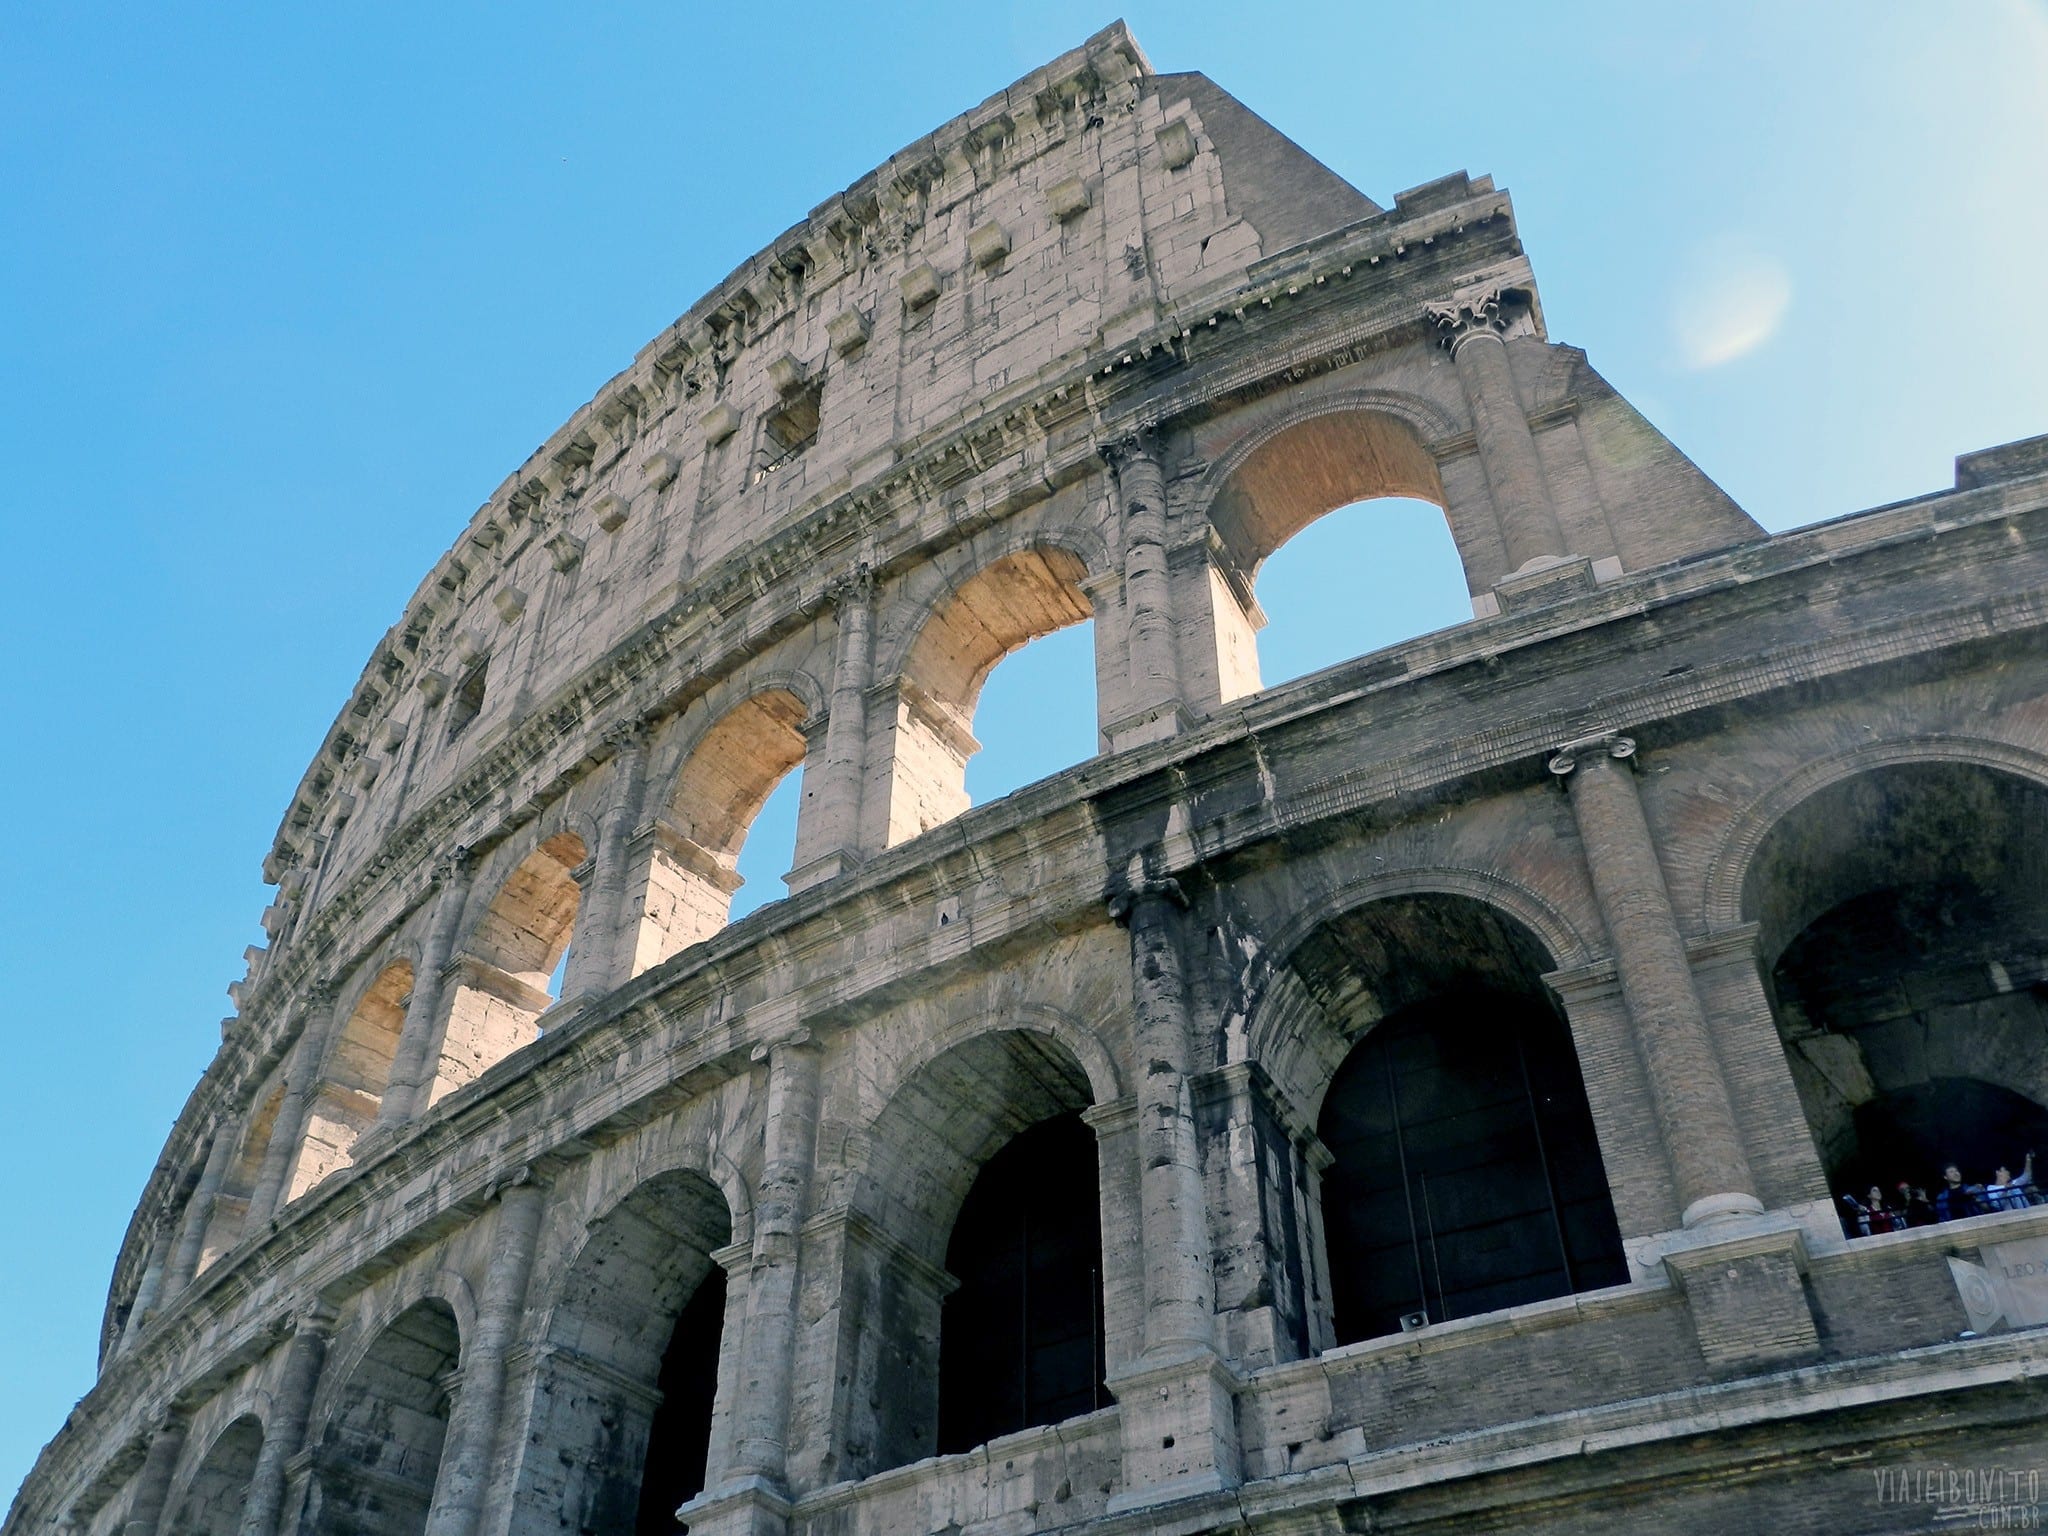 Visitando o Coliseu com poucas horas de conexão em Roma